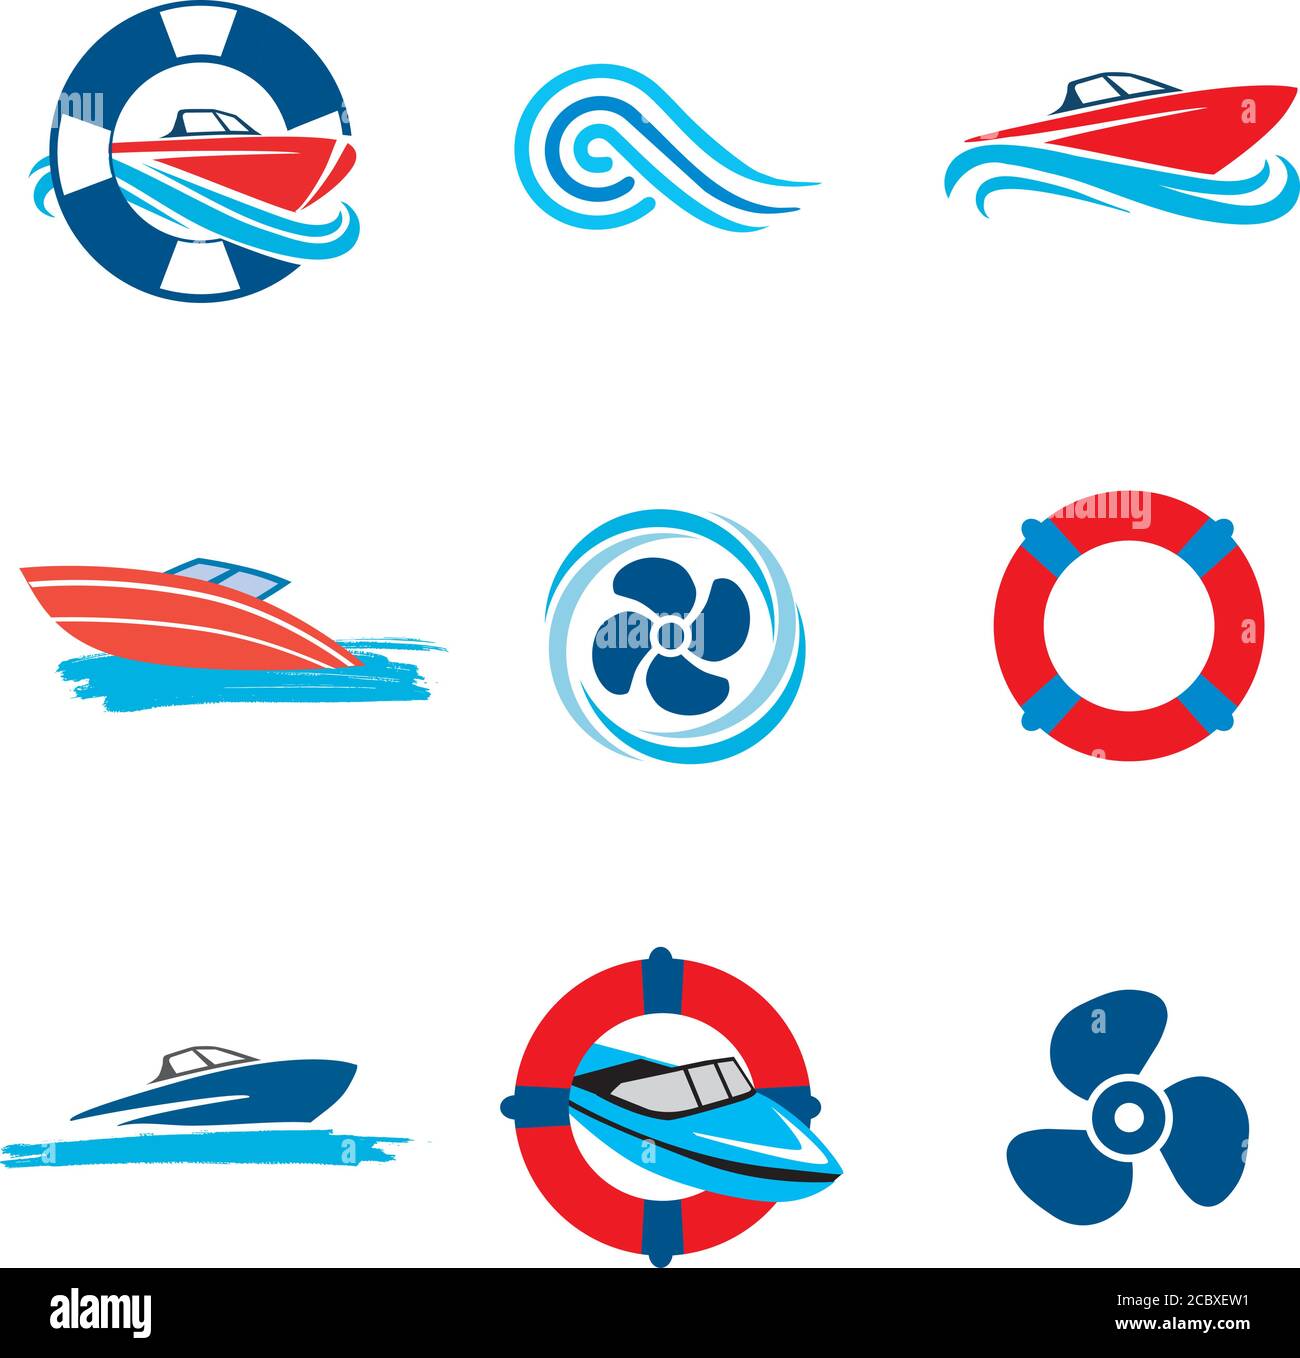 Juego de iconos de motor Boat. Conjunto de coloridos iconos con embarcaciones a motor y hélices. Vector disponible. Ilustración del Vector